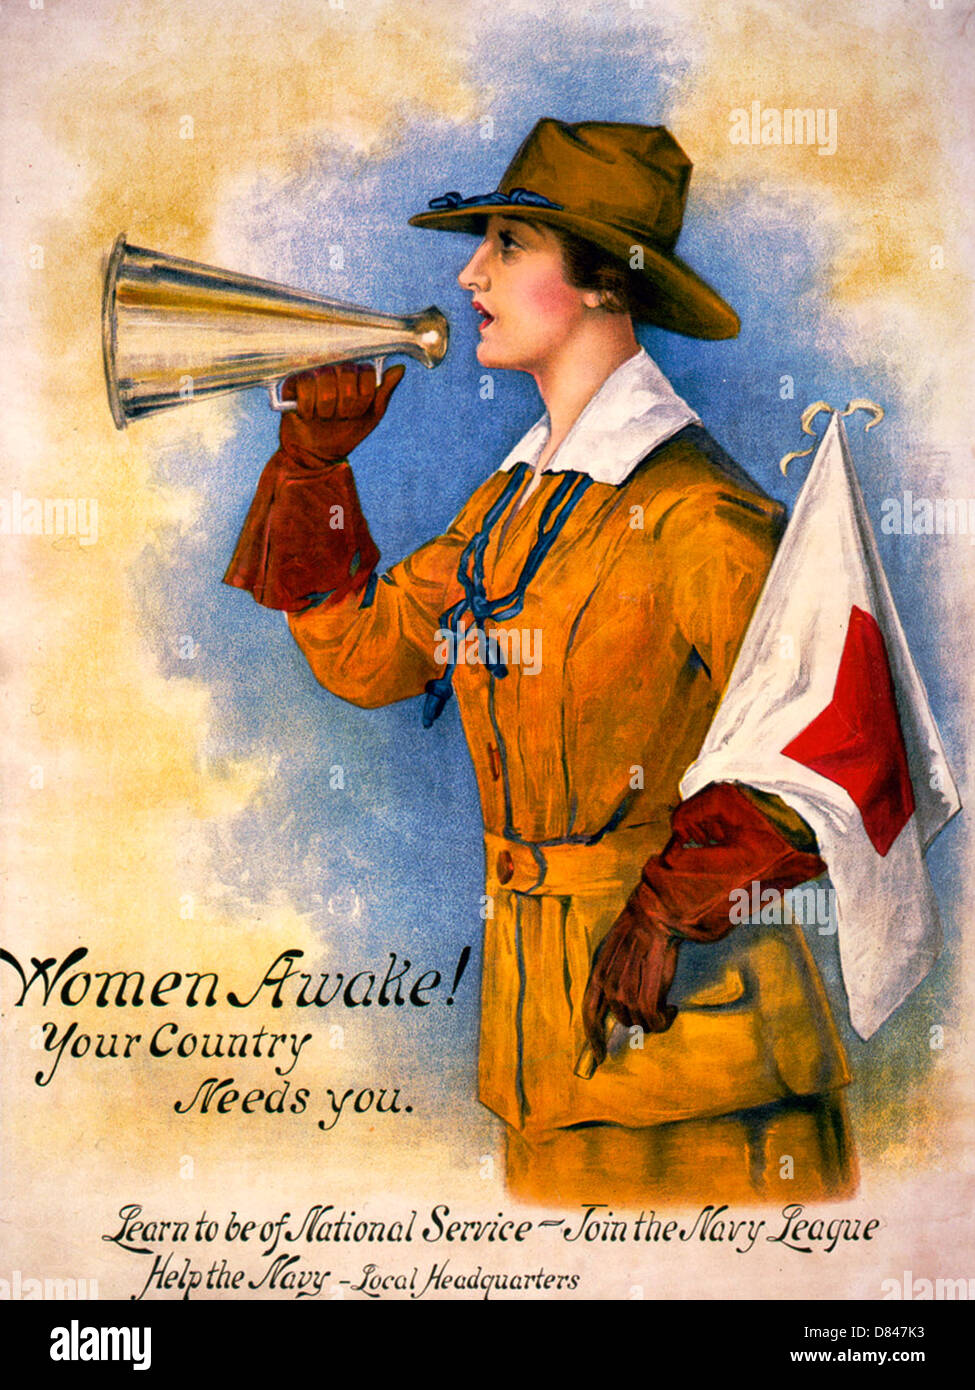 Frauen wach!  Ihr Land braucht Sie - Frau in Uniform mit Megaphon und Flagge. 1916-poster Stockfoto